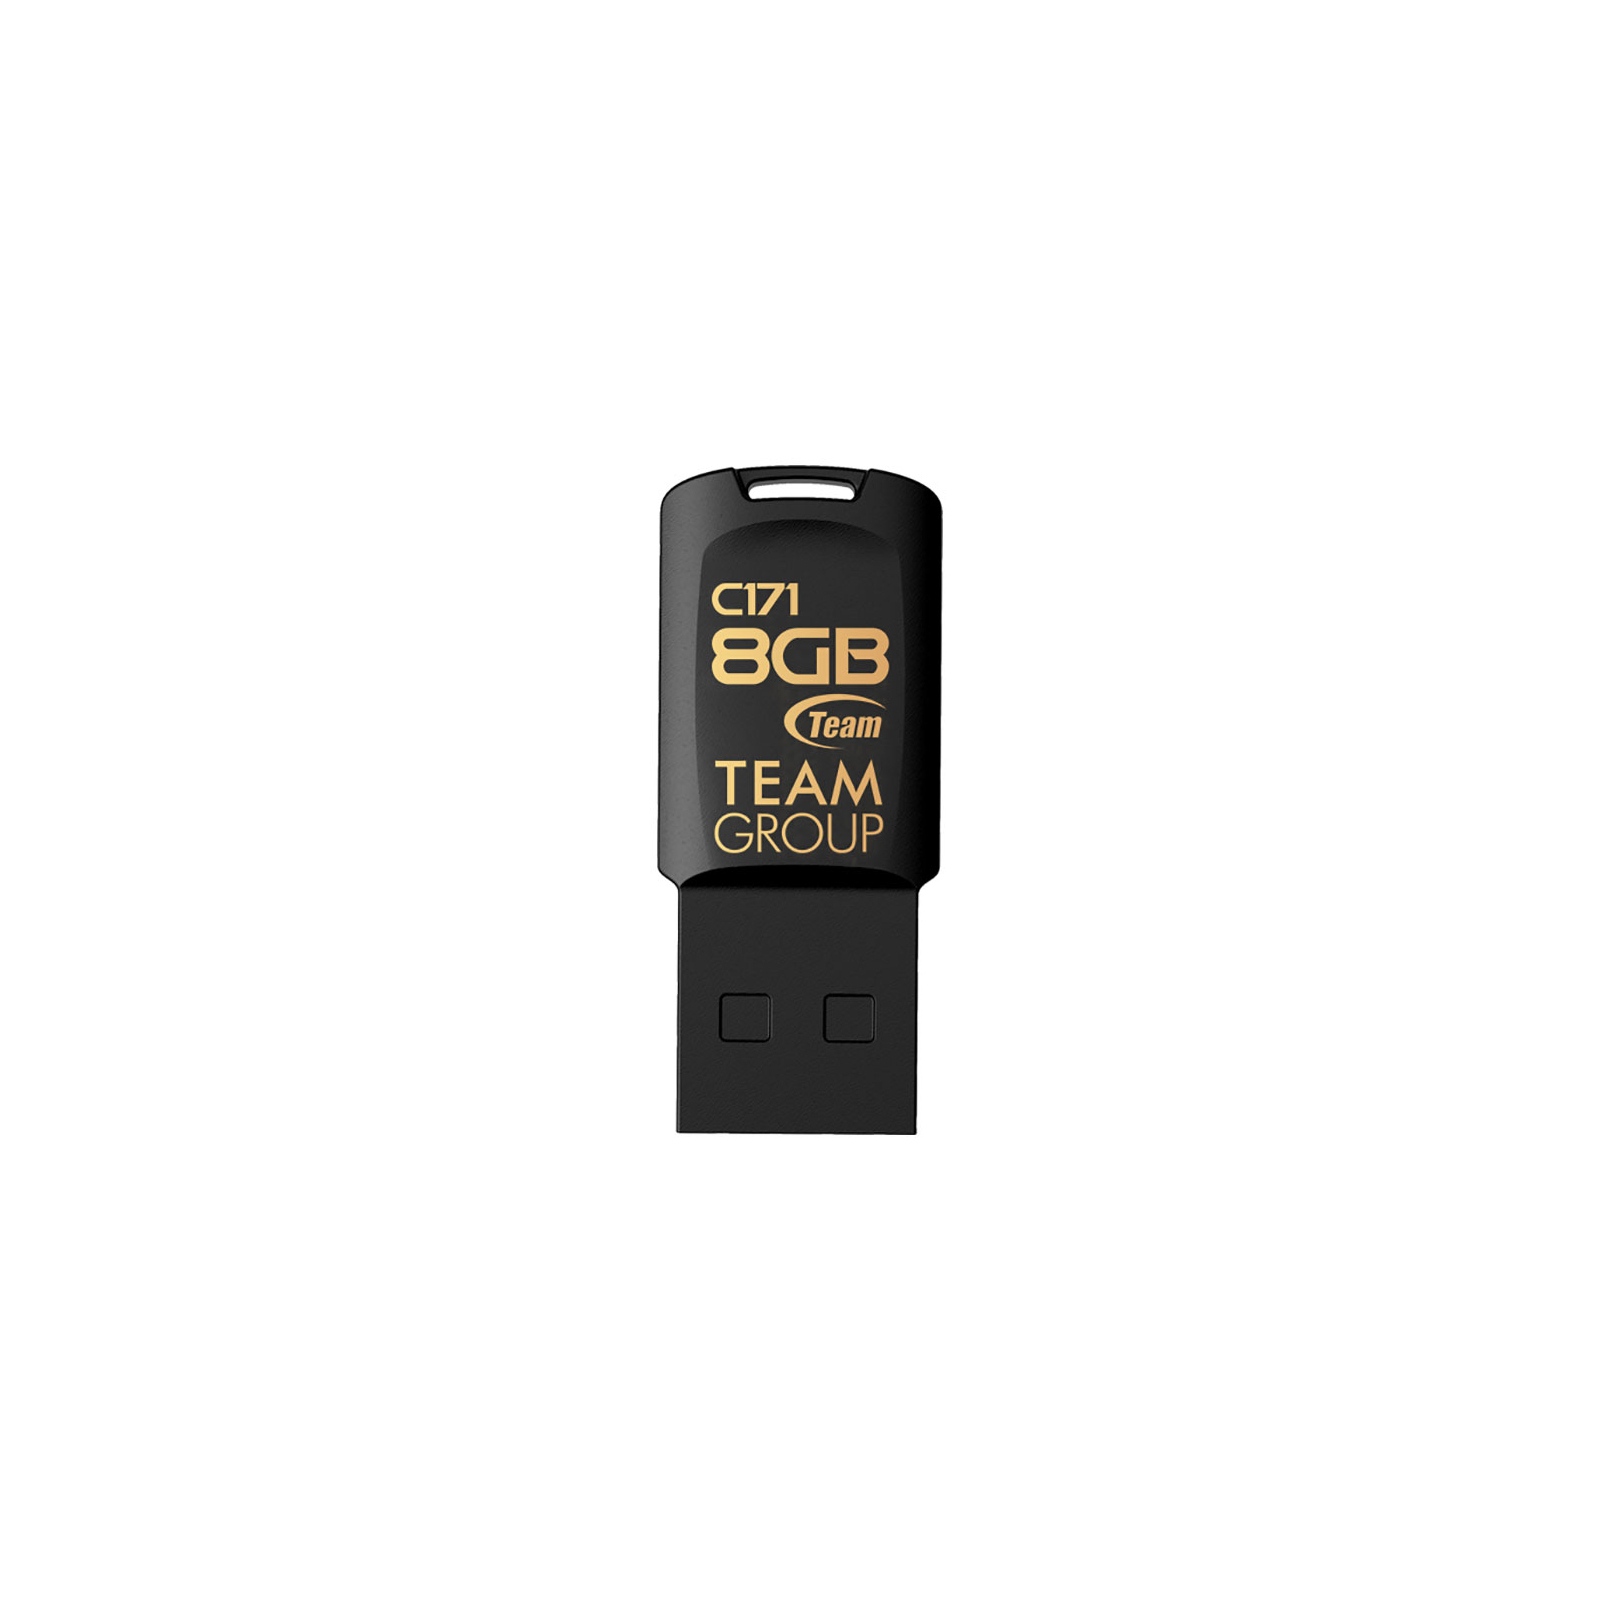 USB флеш накопичувач Team 16GB C171 Black USB 2.0 (TC17116GB01)